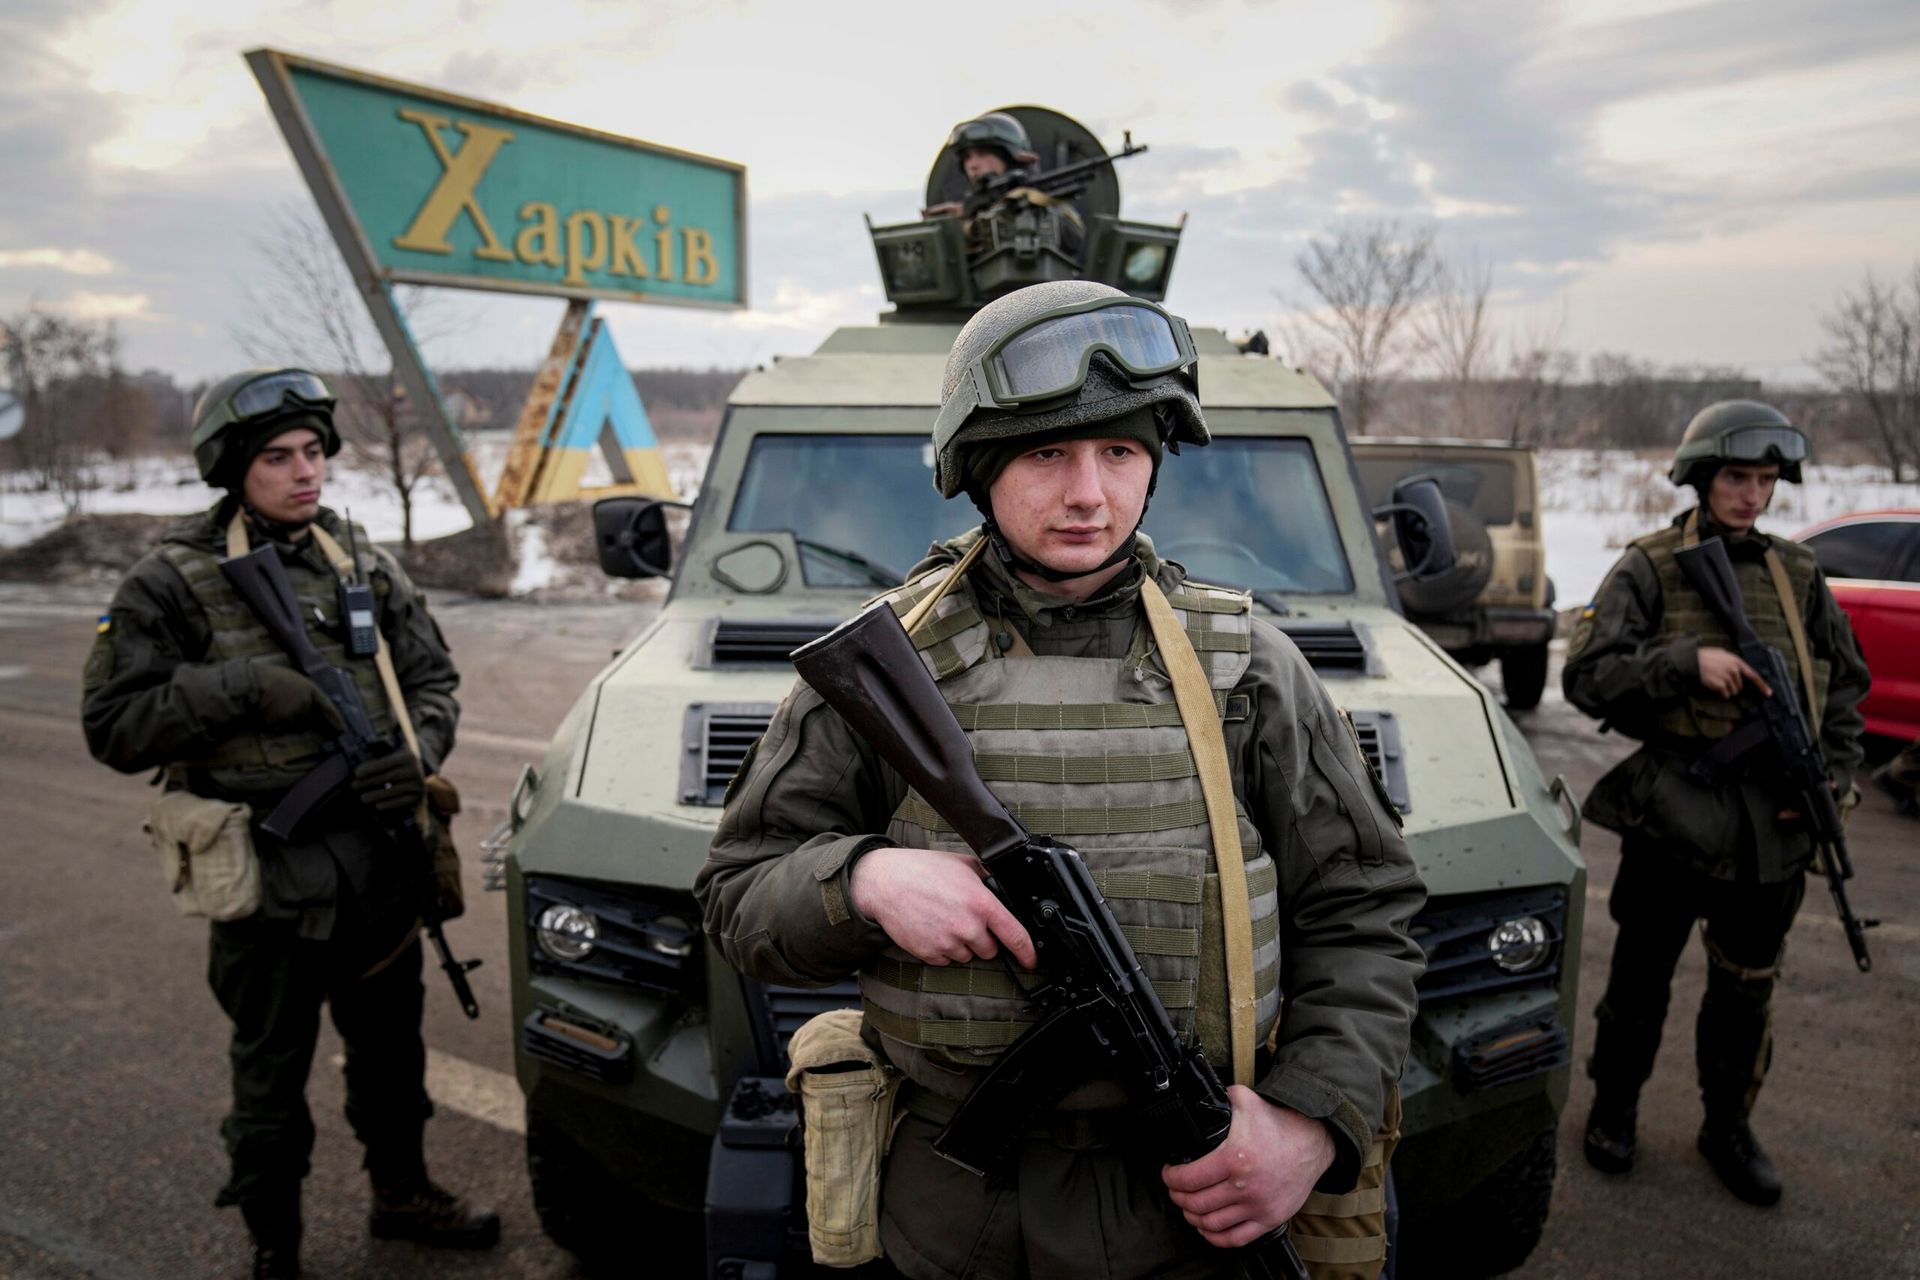 Reden snorkel Oost Nederland gaat wapens leveren aan Oekraïne - Joop - BNNVARA